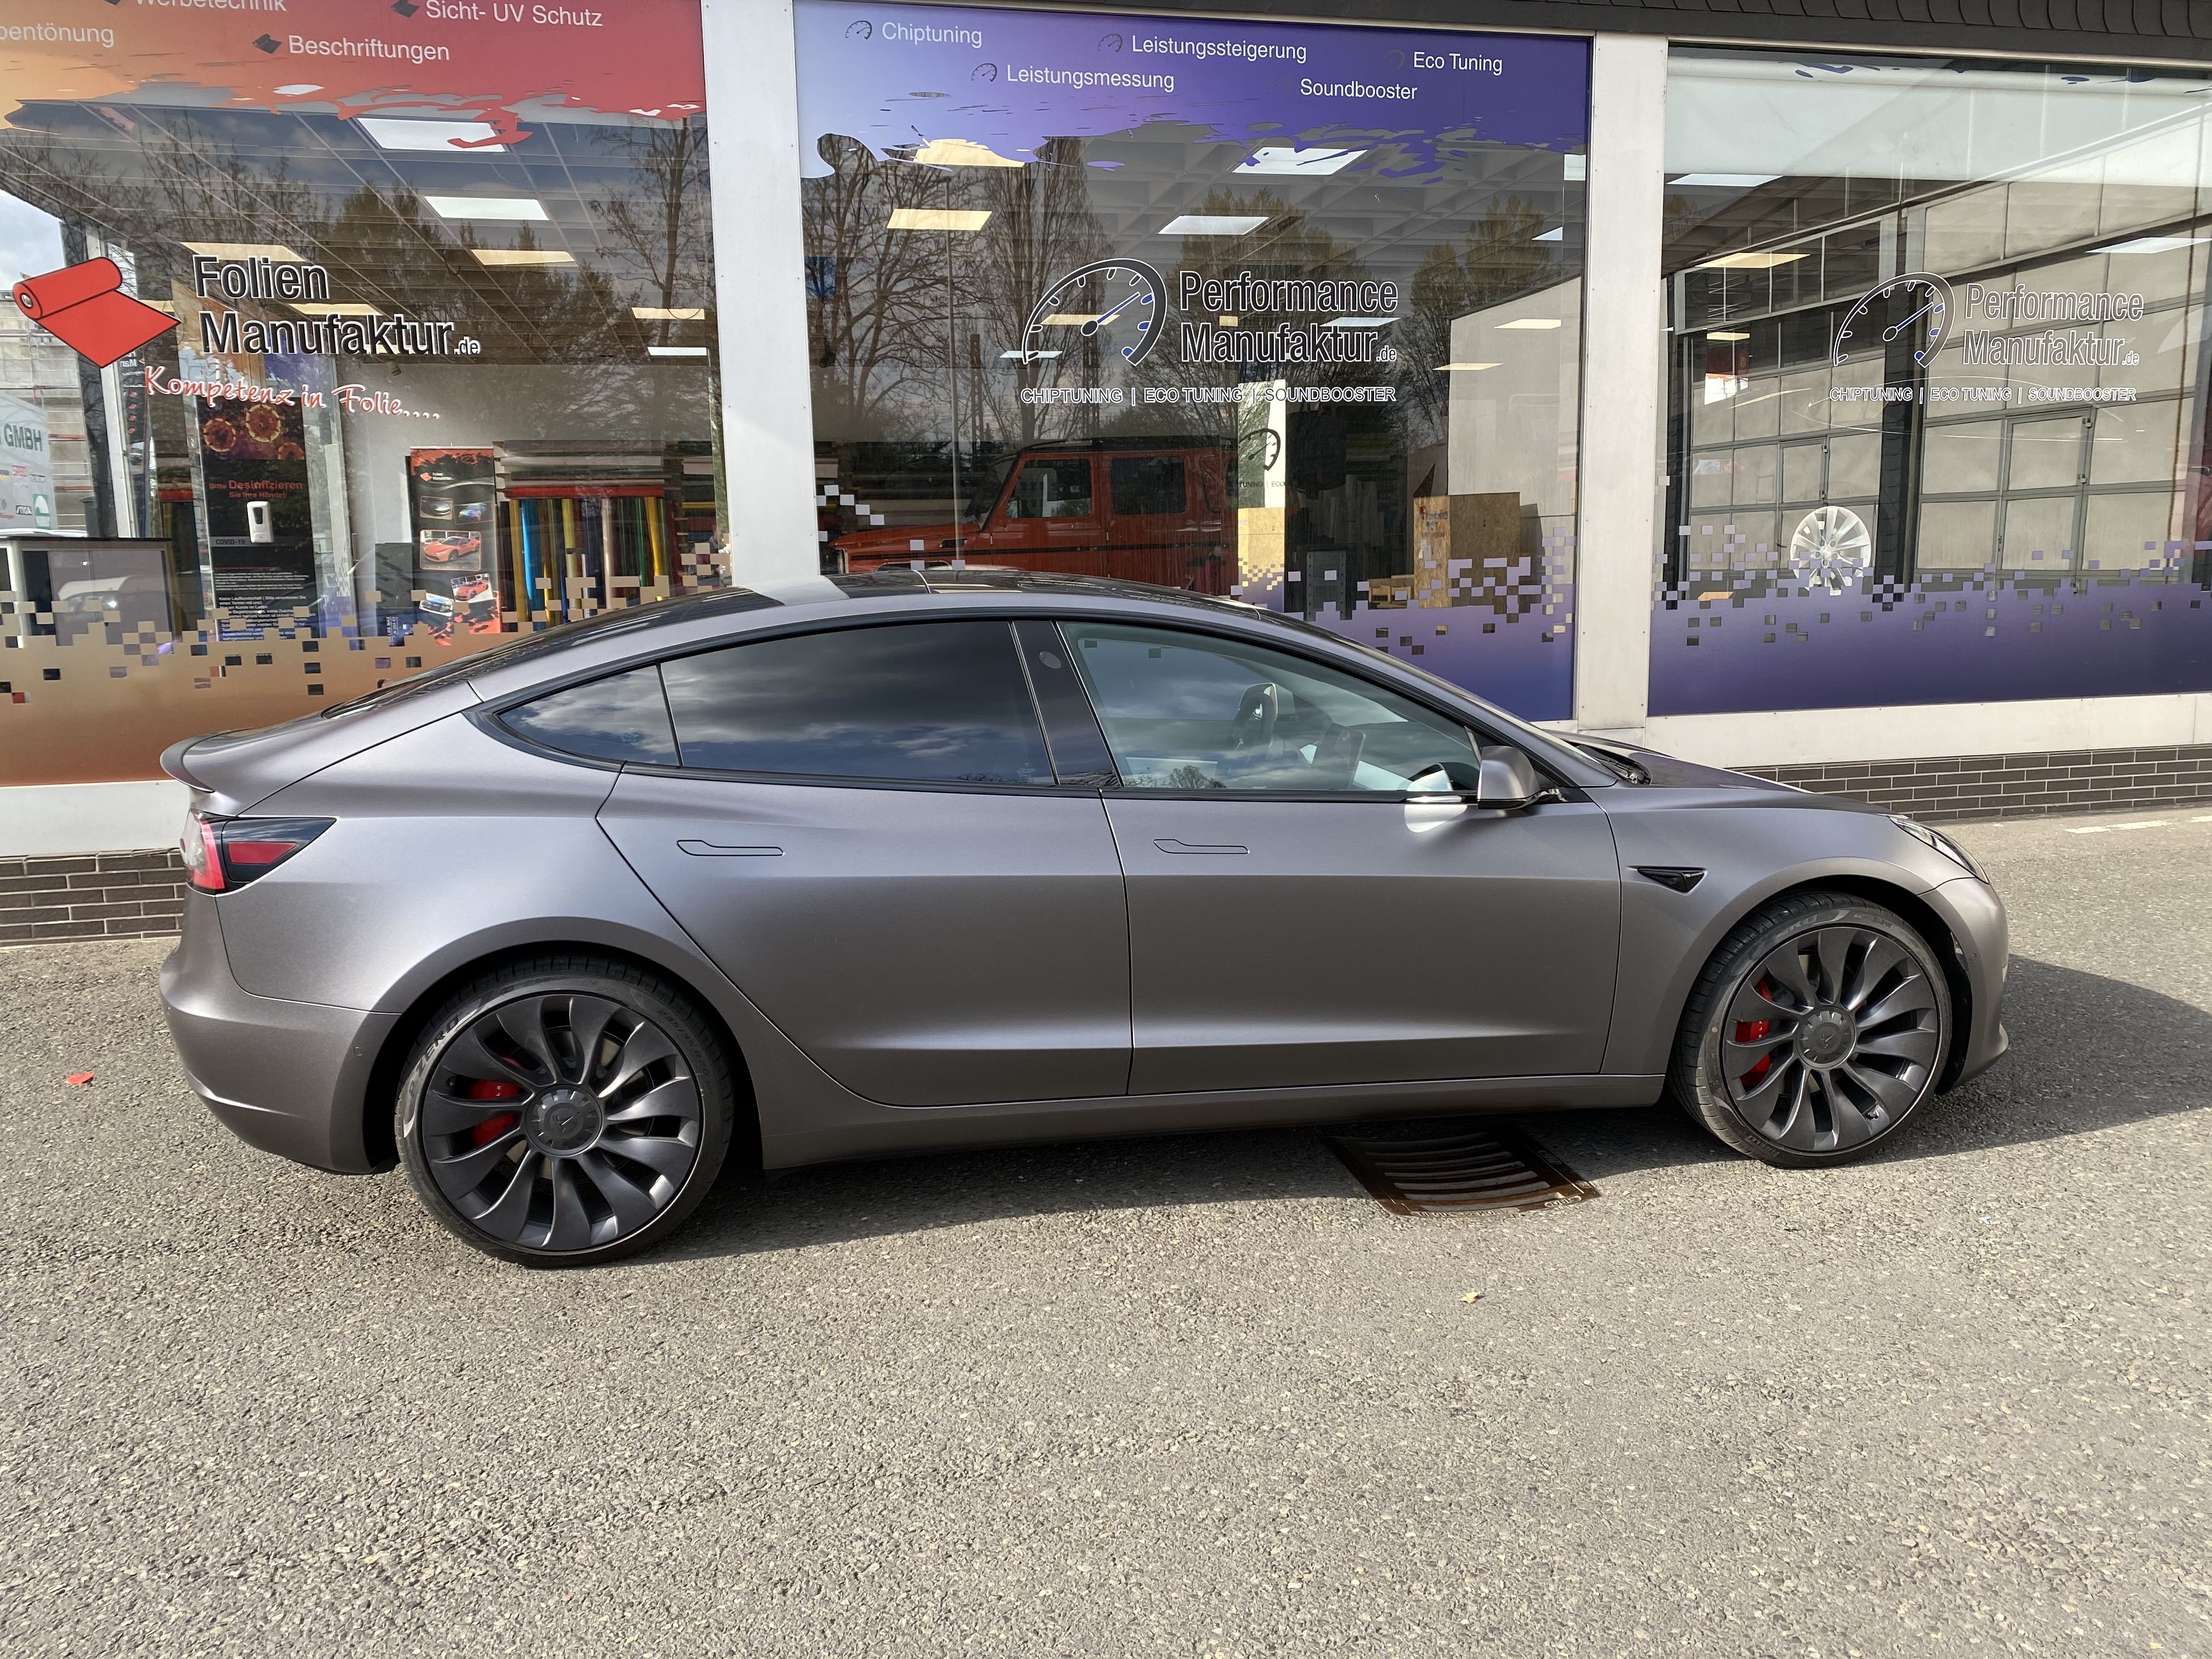 Passgenaue Tönungsfolie für Fahrzeuge der Marke Tesla.